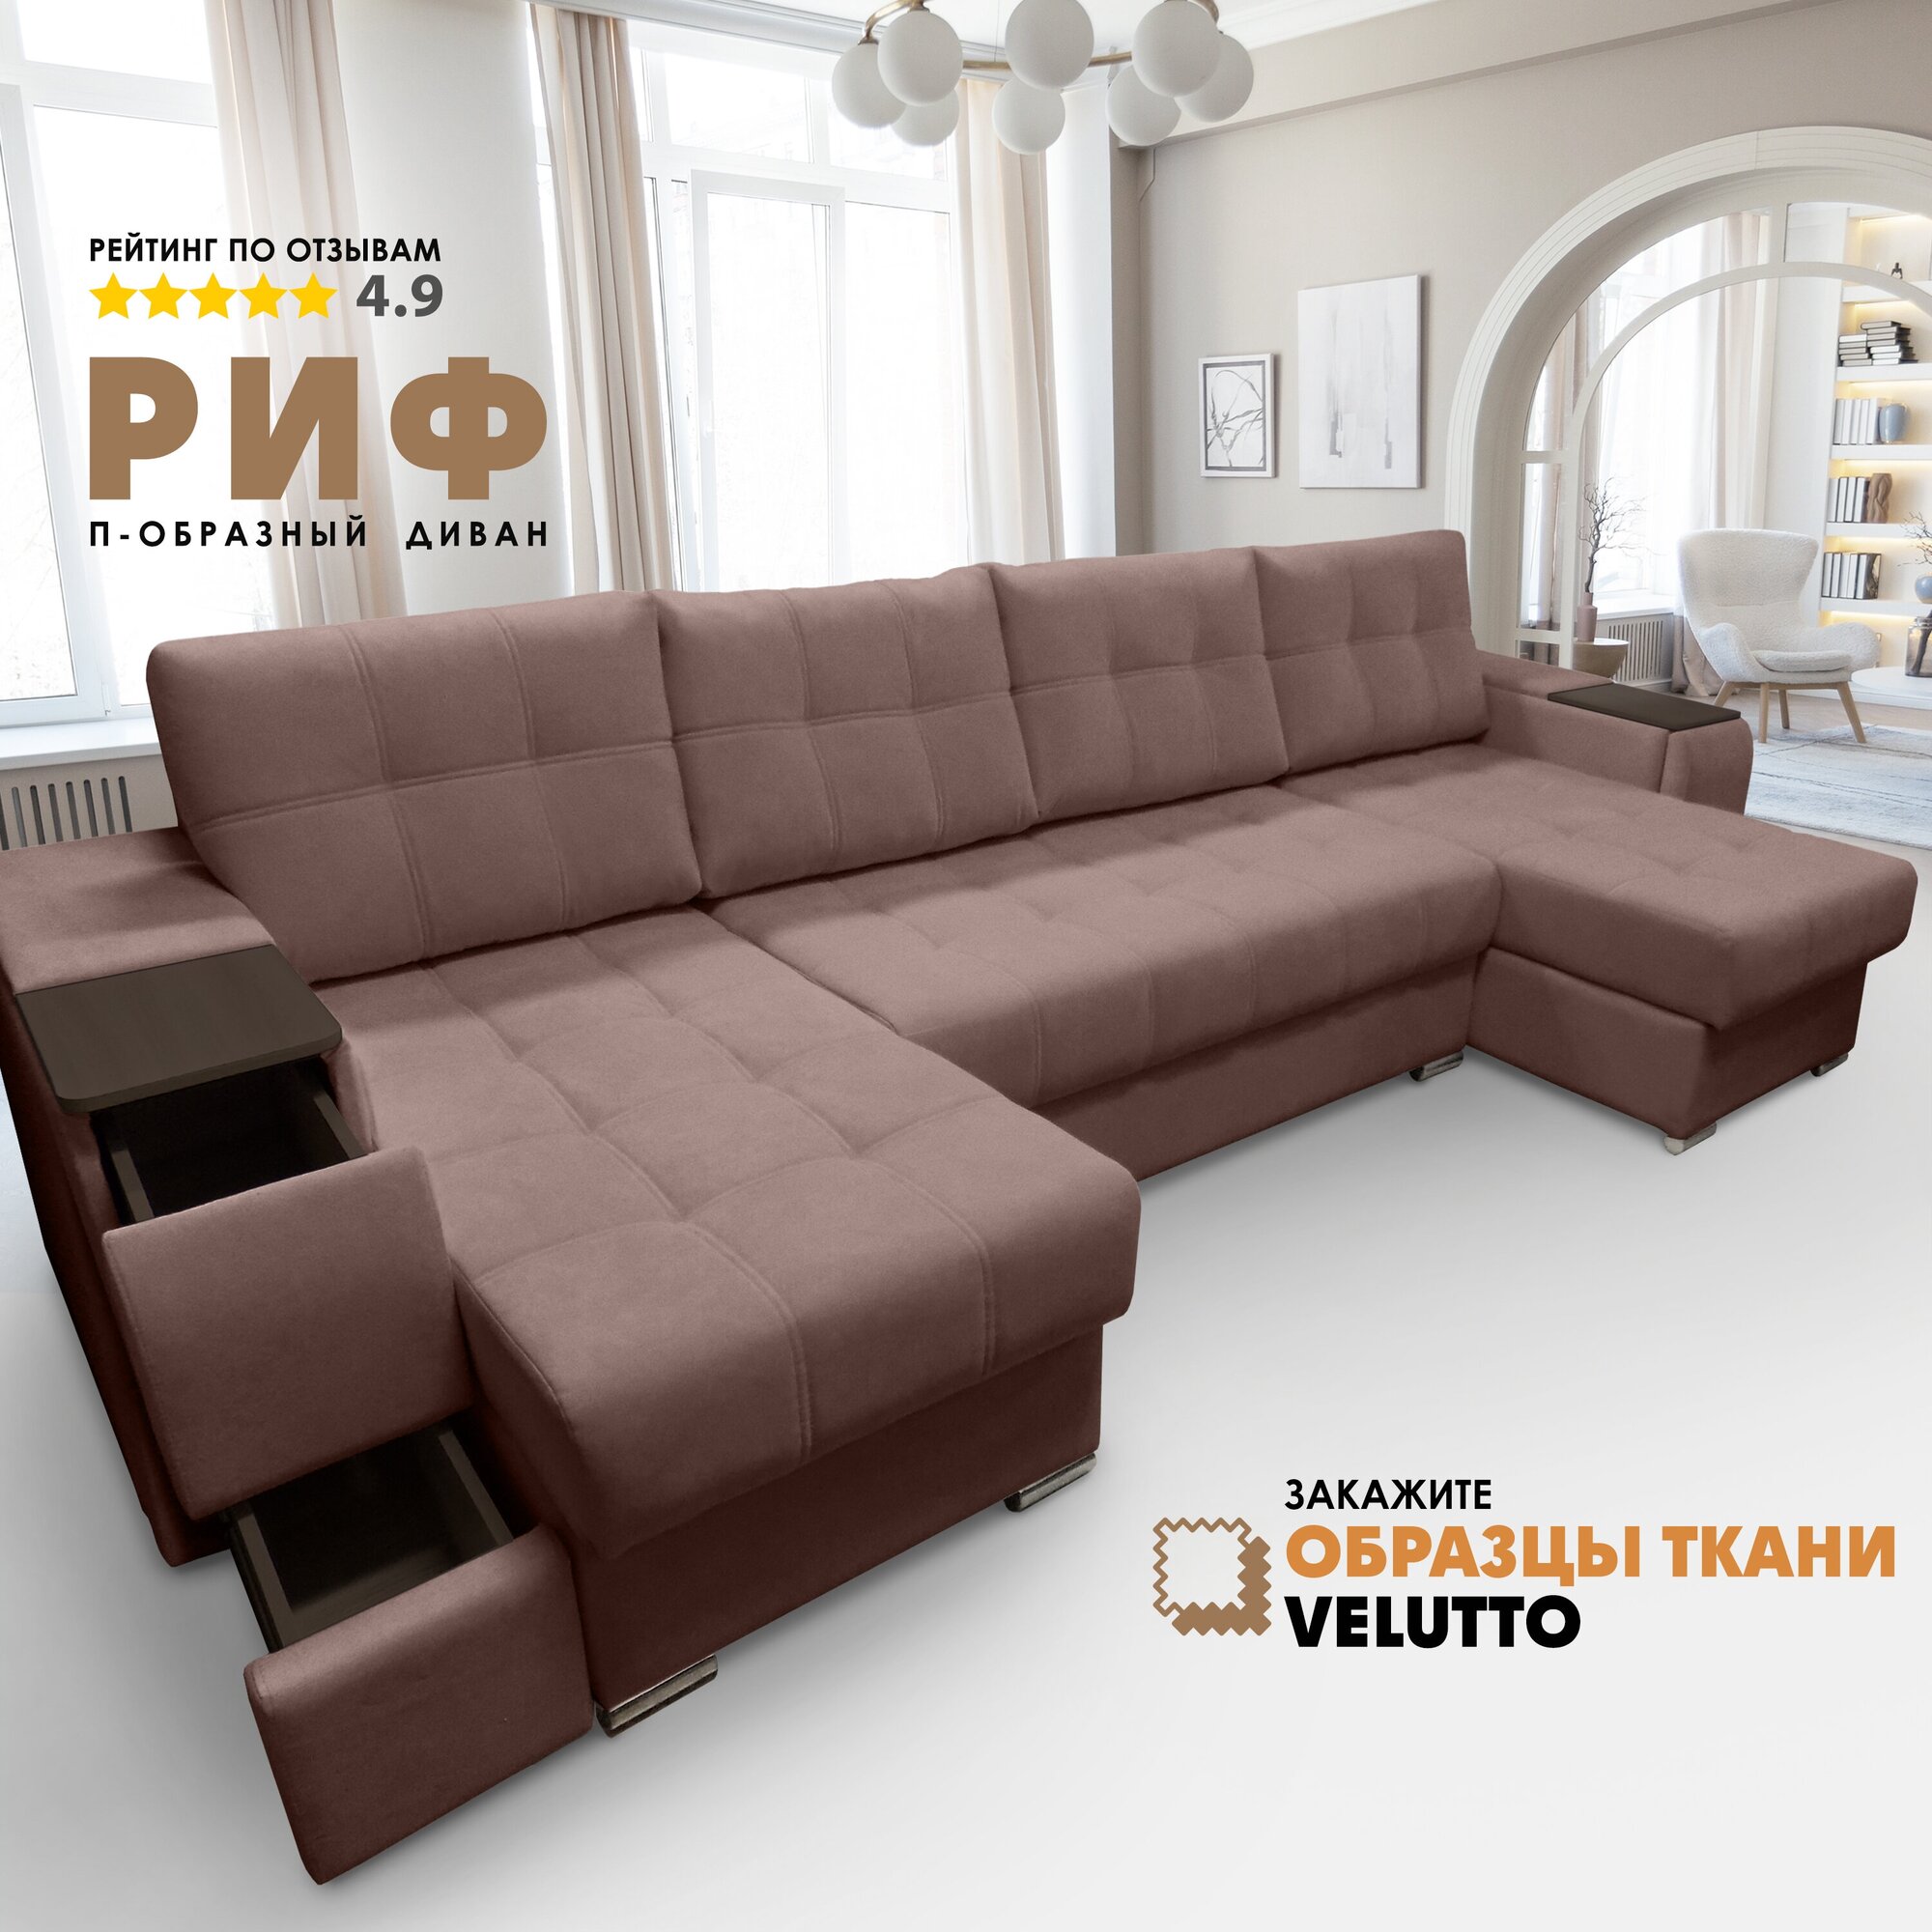 П-образный диван "Риф" Velutto 36 (накладки Венге)